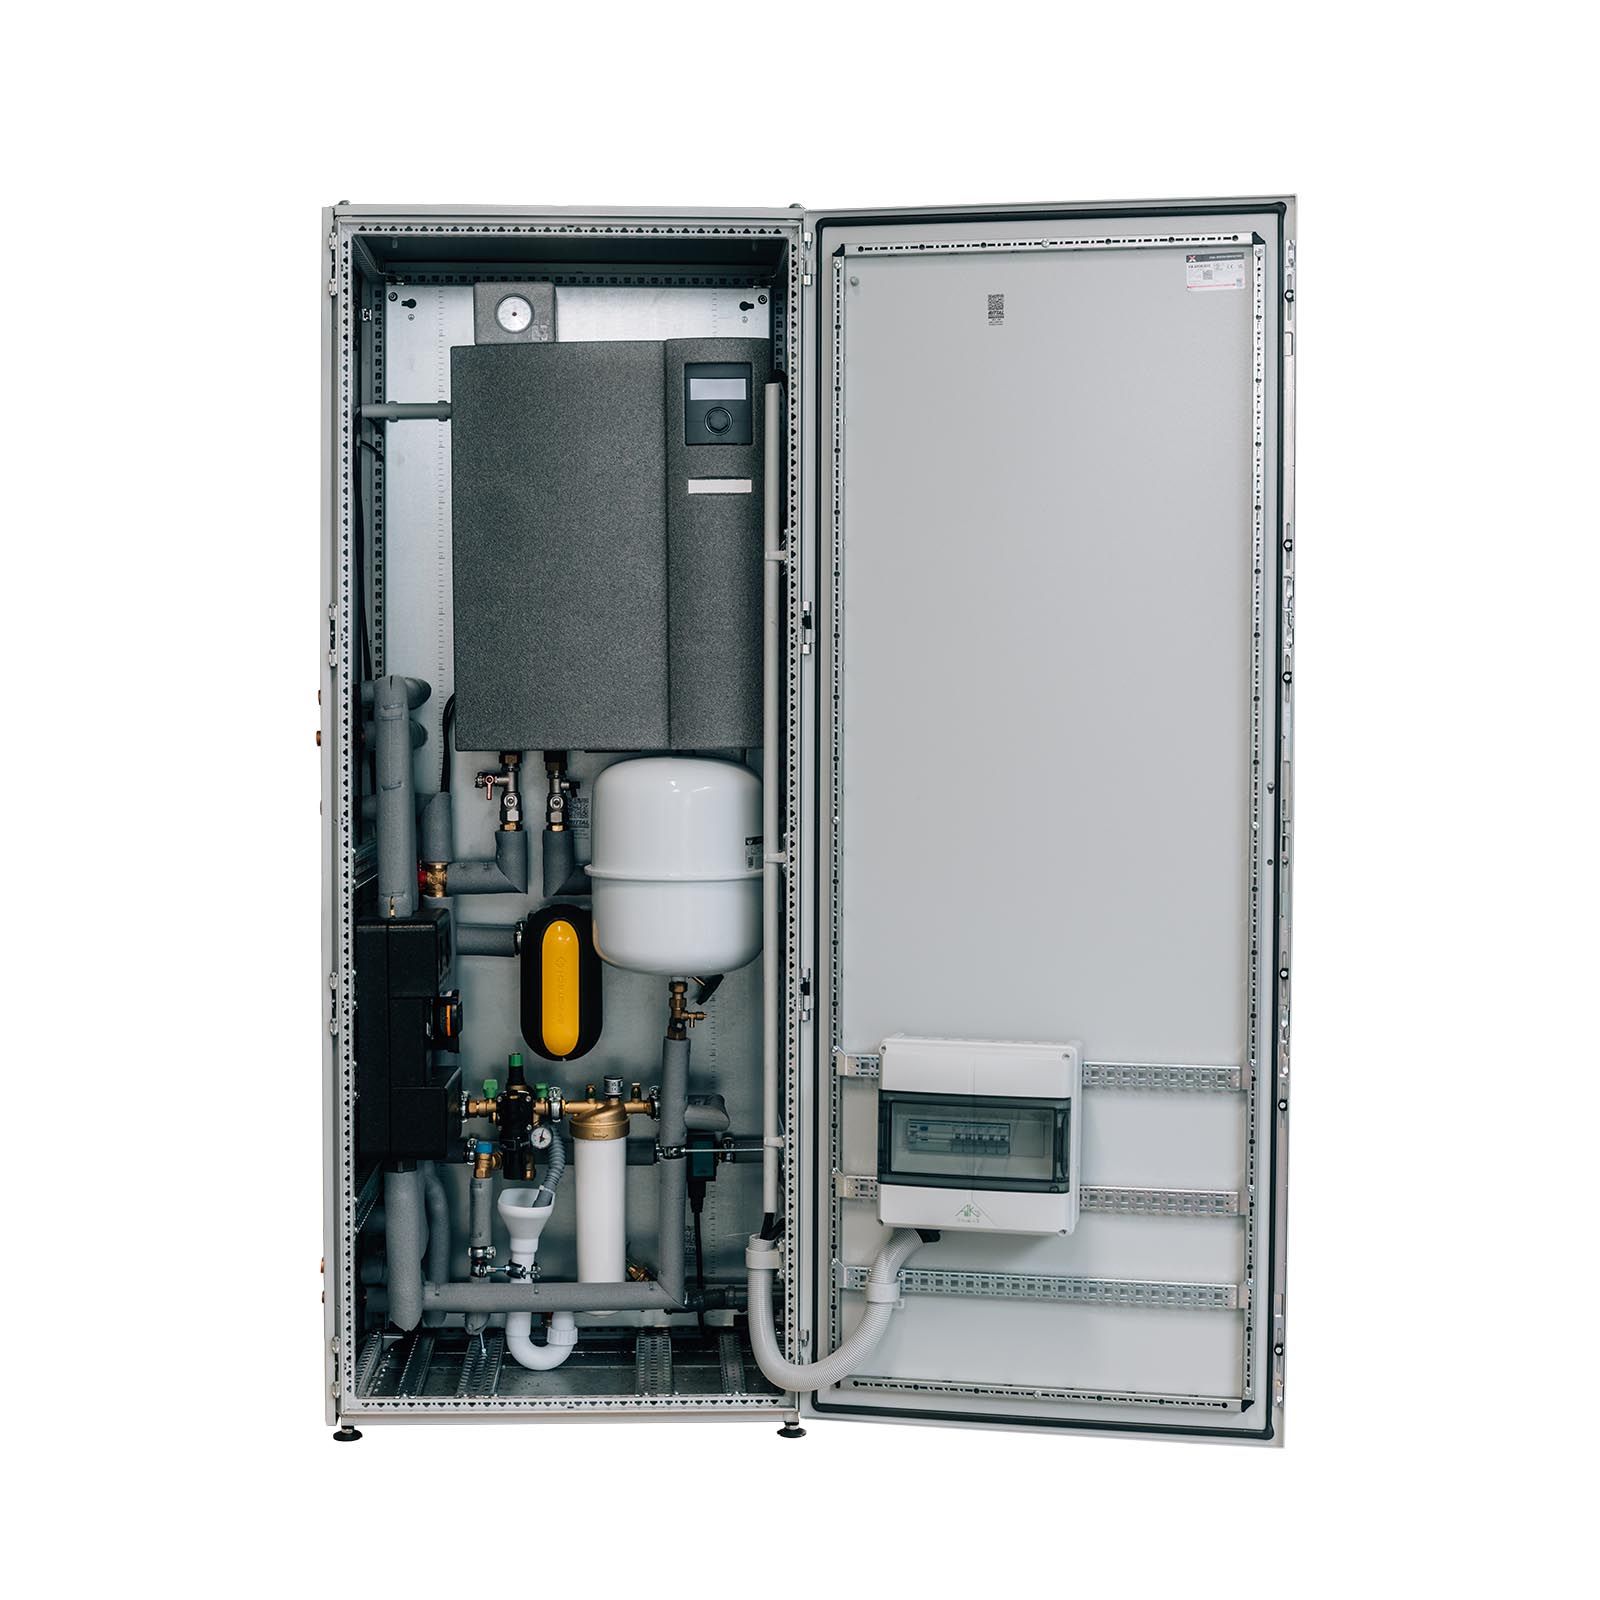 ThermCube Basic All-in-One Luft-Wasser Wärmepumpen System Speicheranschluss links